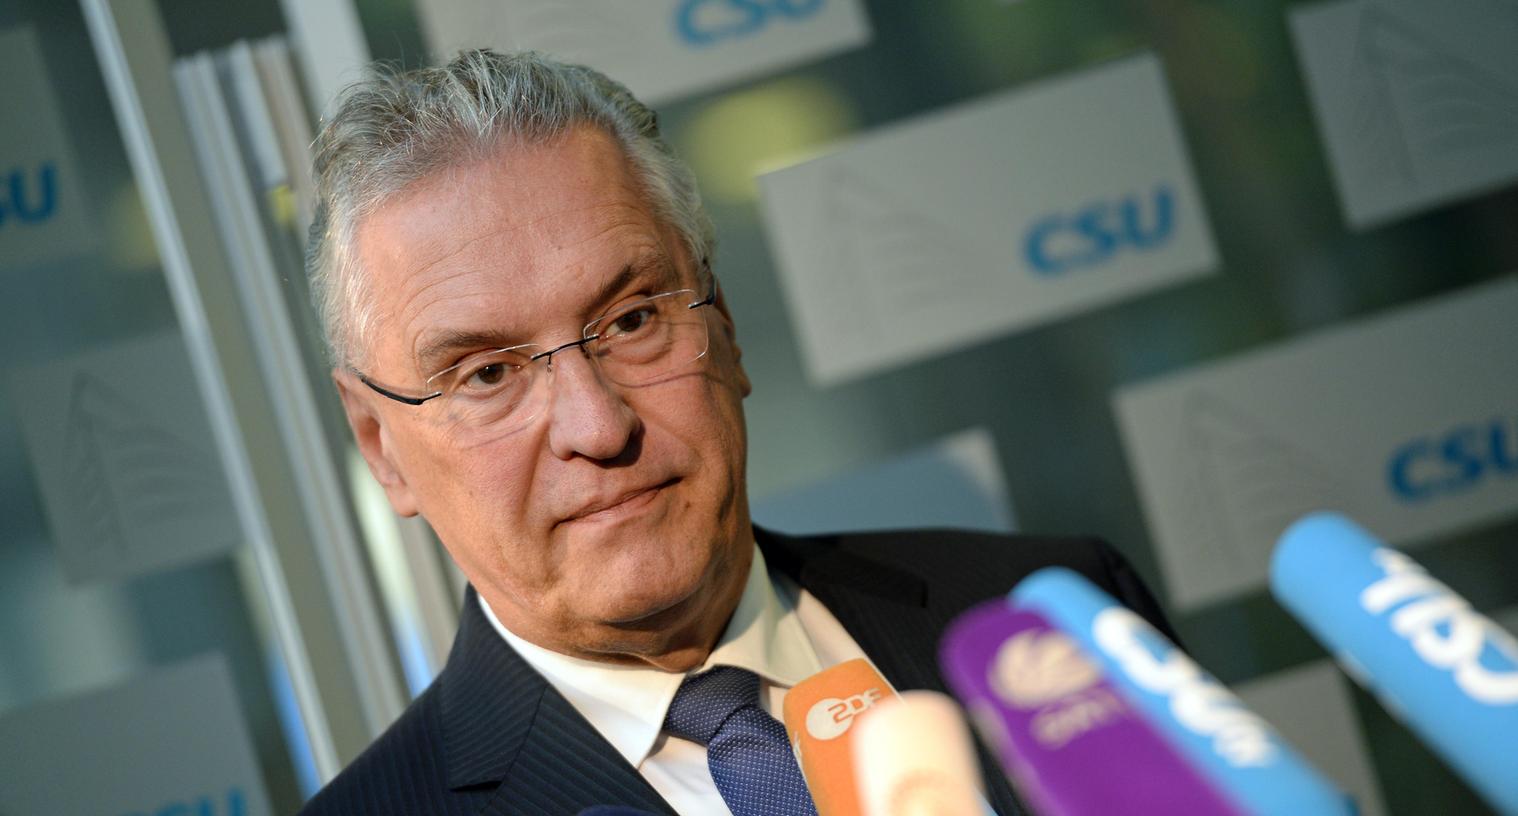 Bayerns Innenminister Joachim Herrmann kritisiert nach den Angriffen von Halle auch die AfD.